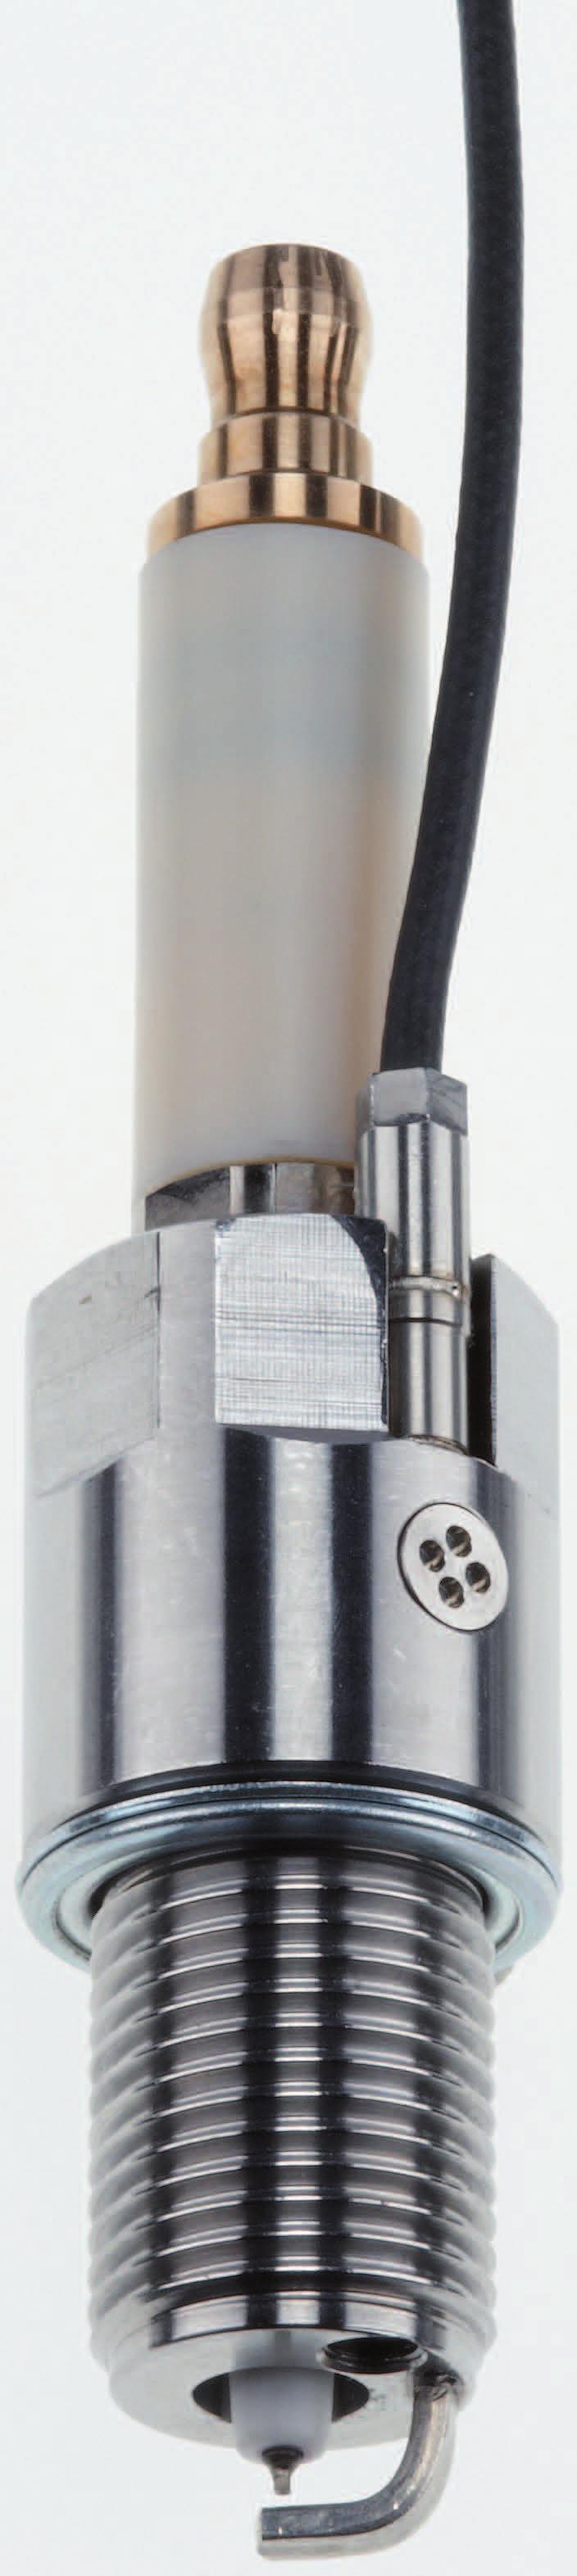 Druck SUNSTAR 传感与控制 http://www.sensor-ic.com/ TEL:0755-83376549 E-MAIL: Messzündkerze M14x1,25 Typ 6118B... mit integriertem 3 mm-zylinderdrucksensor und trennbarem Kabel Die Messzündkerze Typ 6118B.